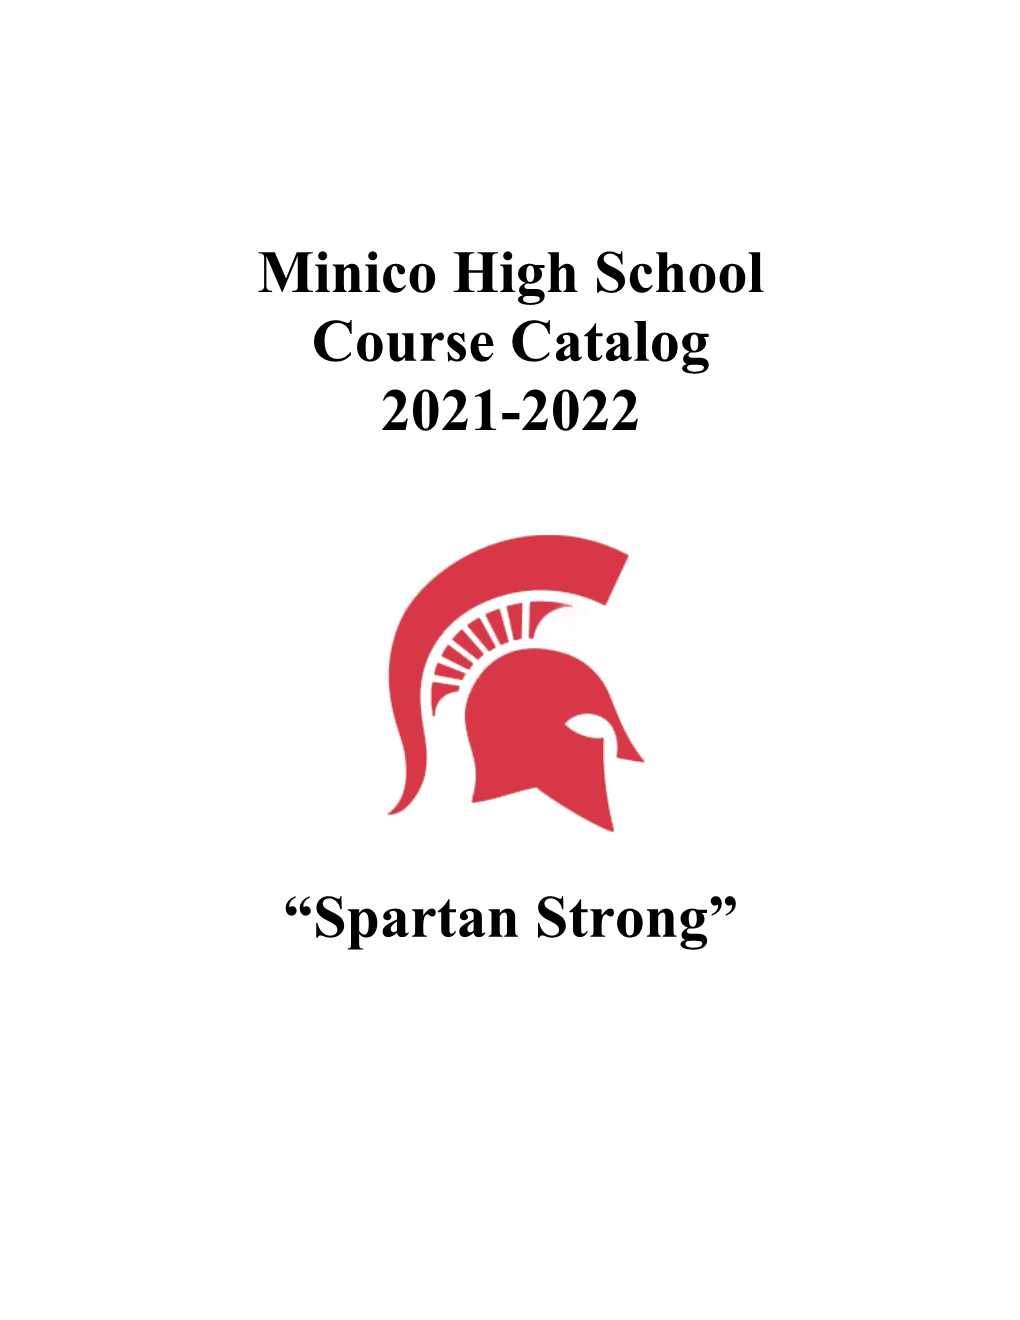 Minico High School Course Catalog 2021-2022 “Spartan Strong”